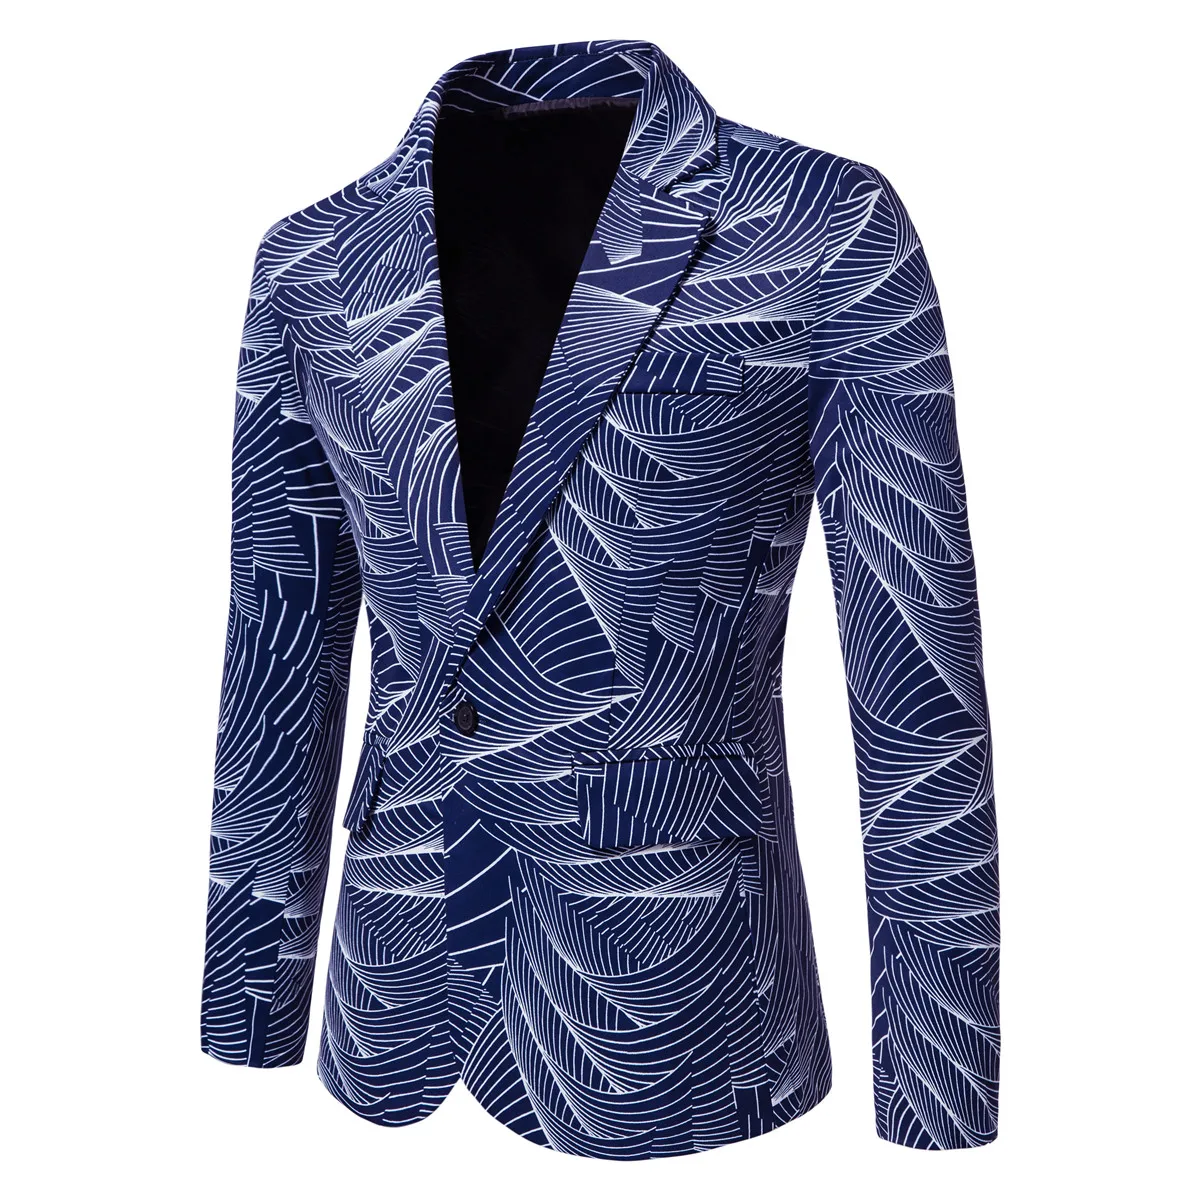 Новый мужской модный блейзер с принтом, деловой повседневный блейзер, классические пиджаки для вечеринок